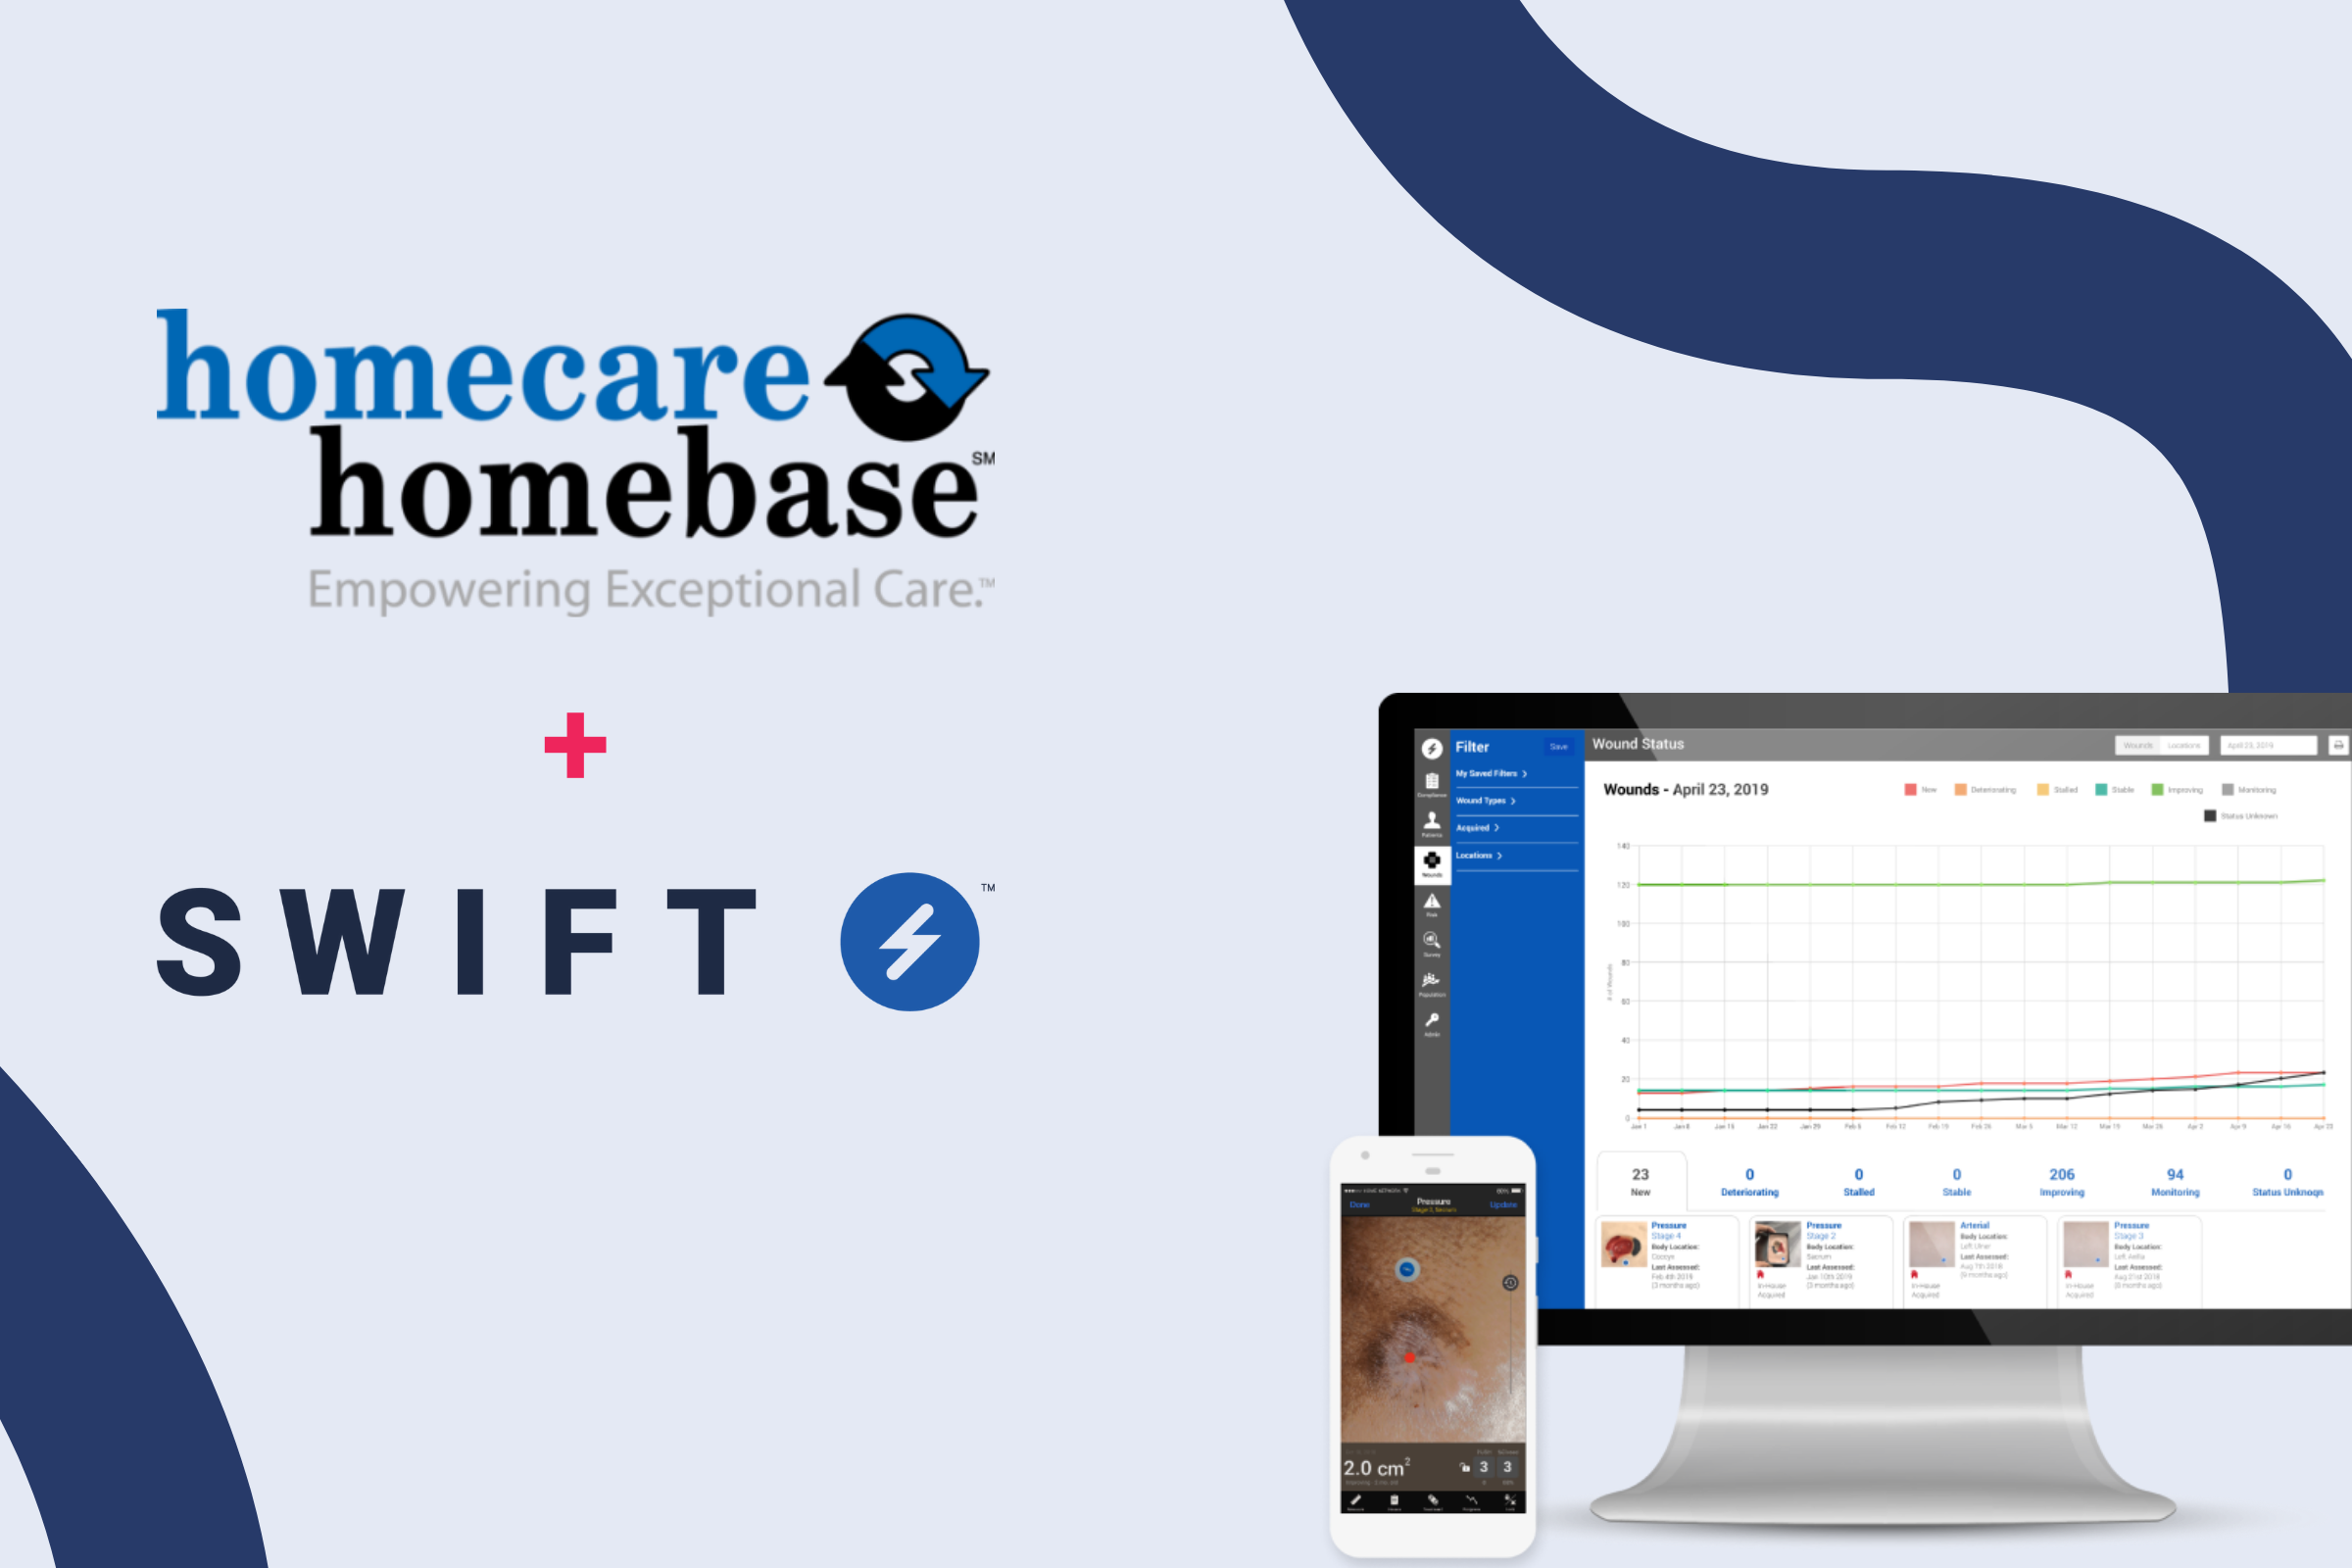 Home Care Software Designed By Nurses for Nurses- HCHB